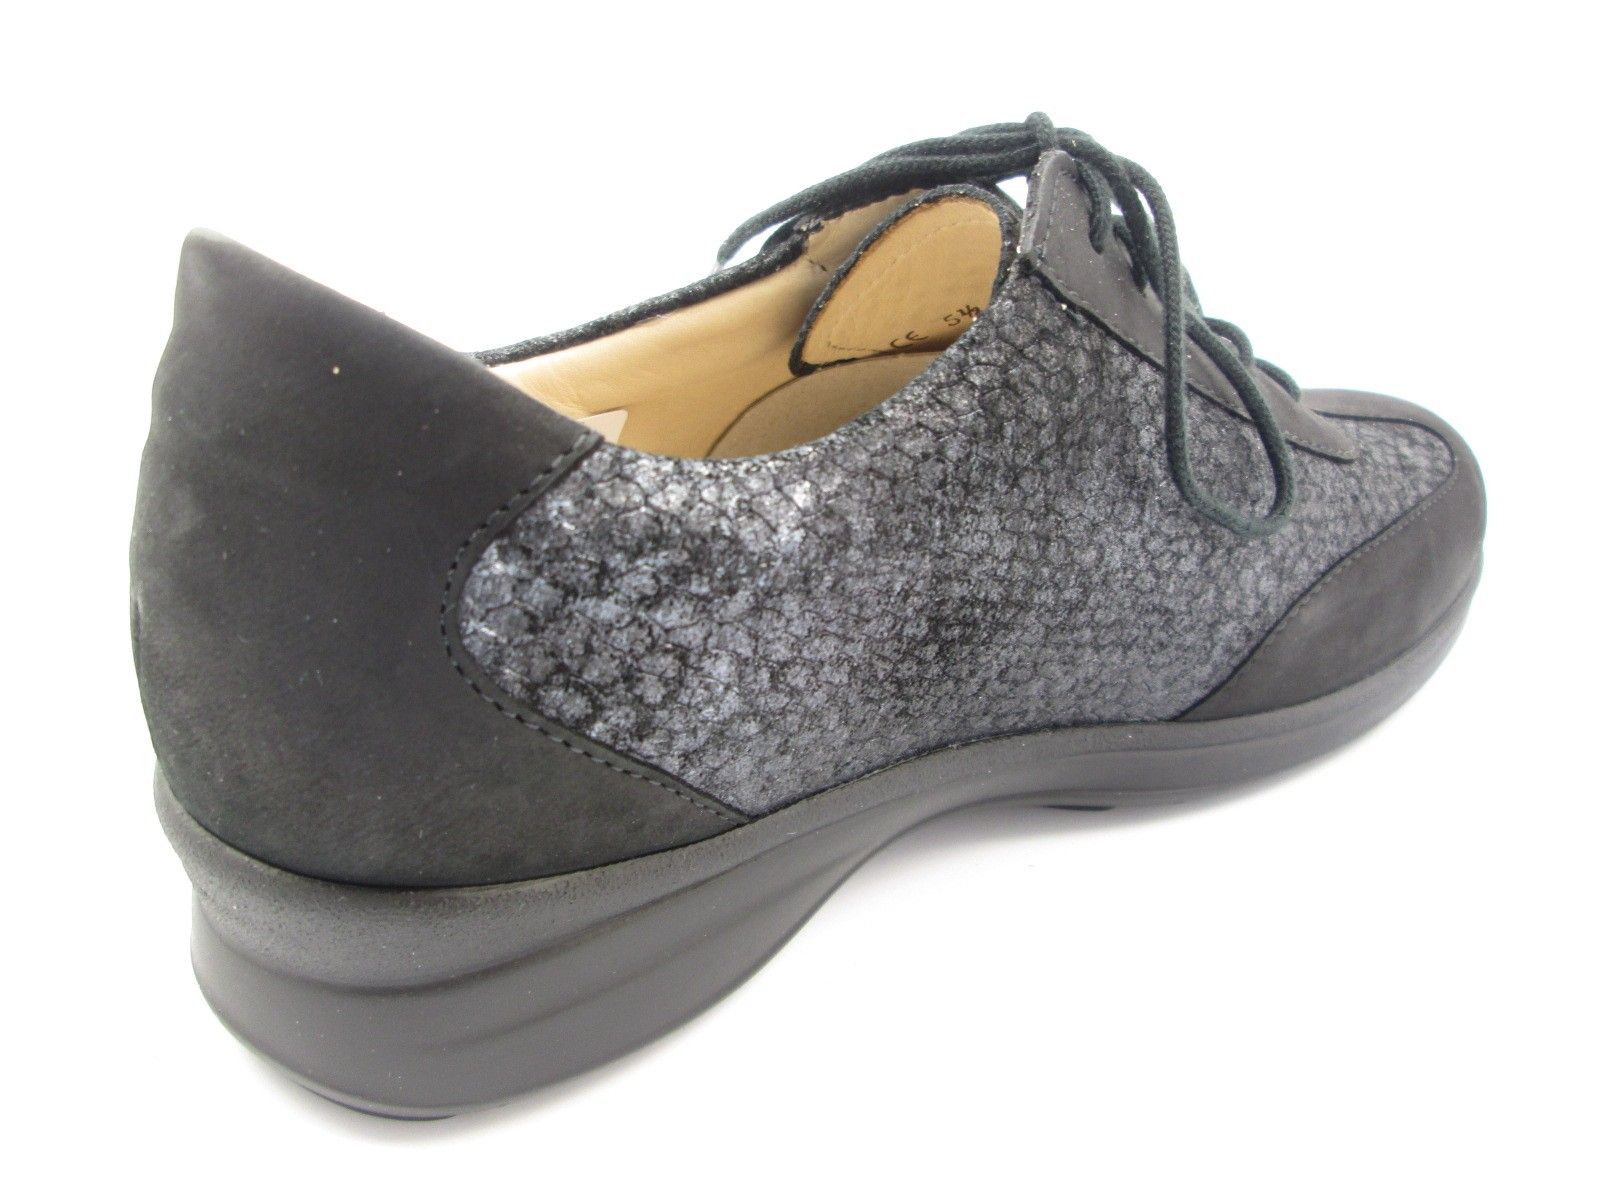 Schuh von Finn Comfort, 8